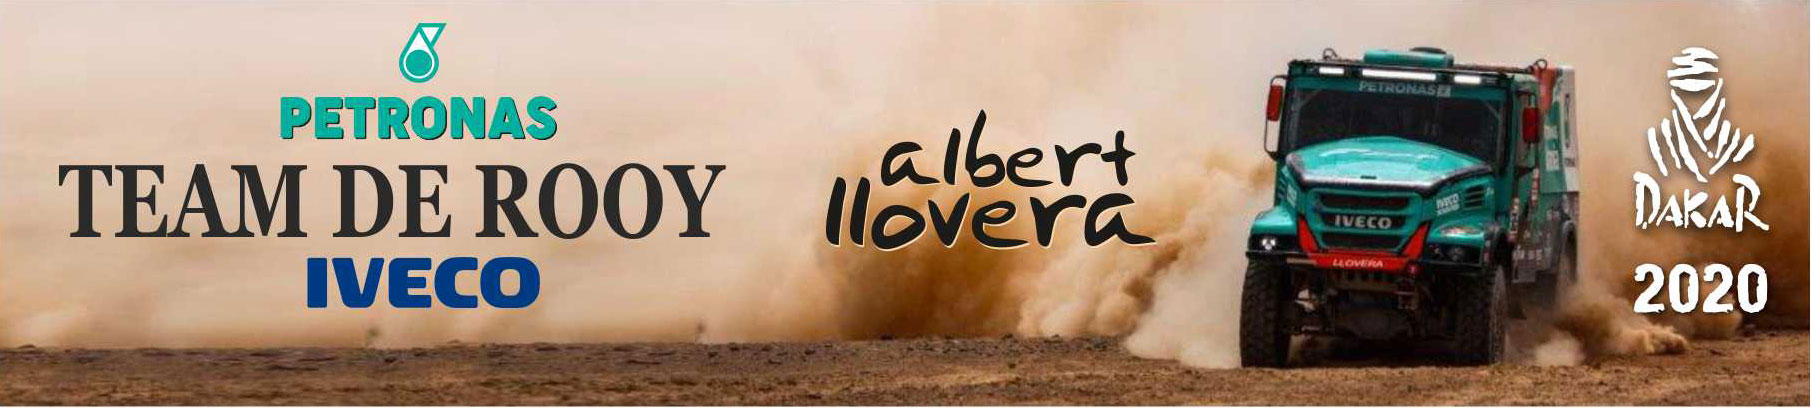 Cabecera Dakar Albert Llovera